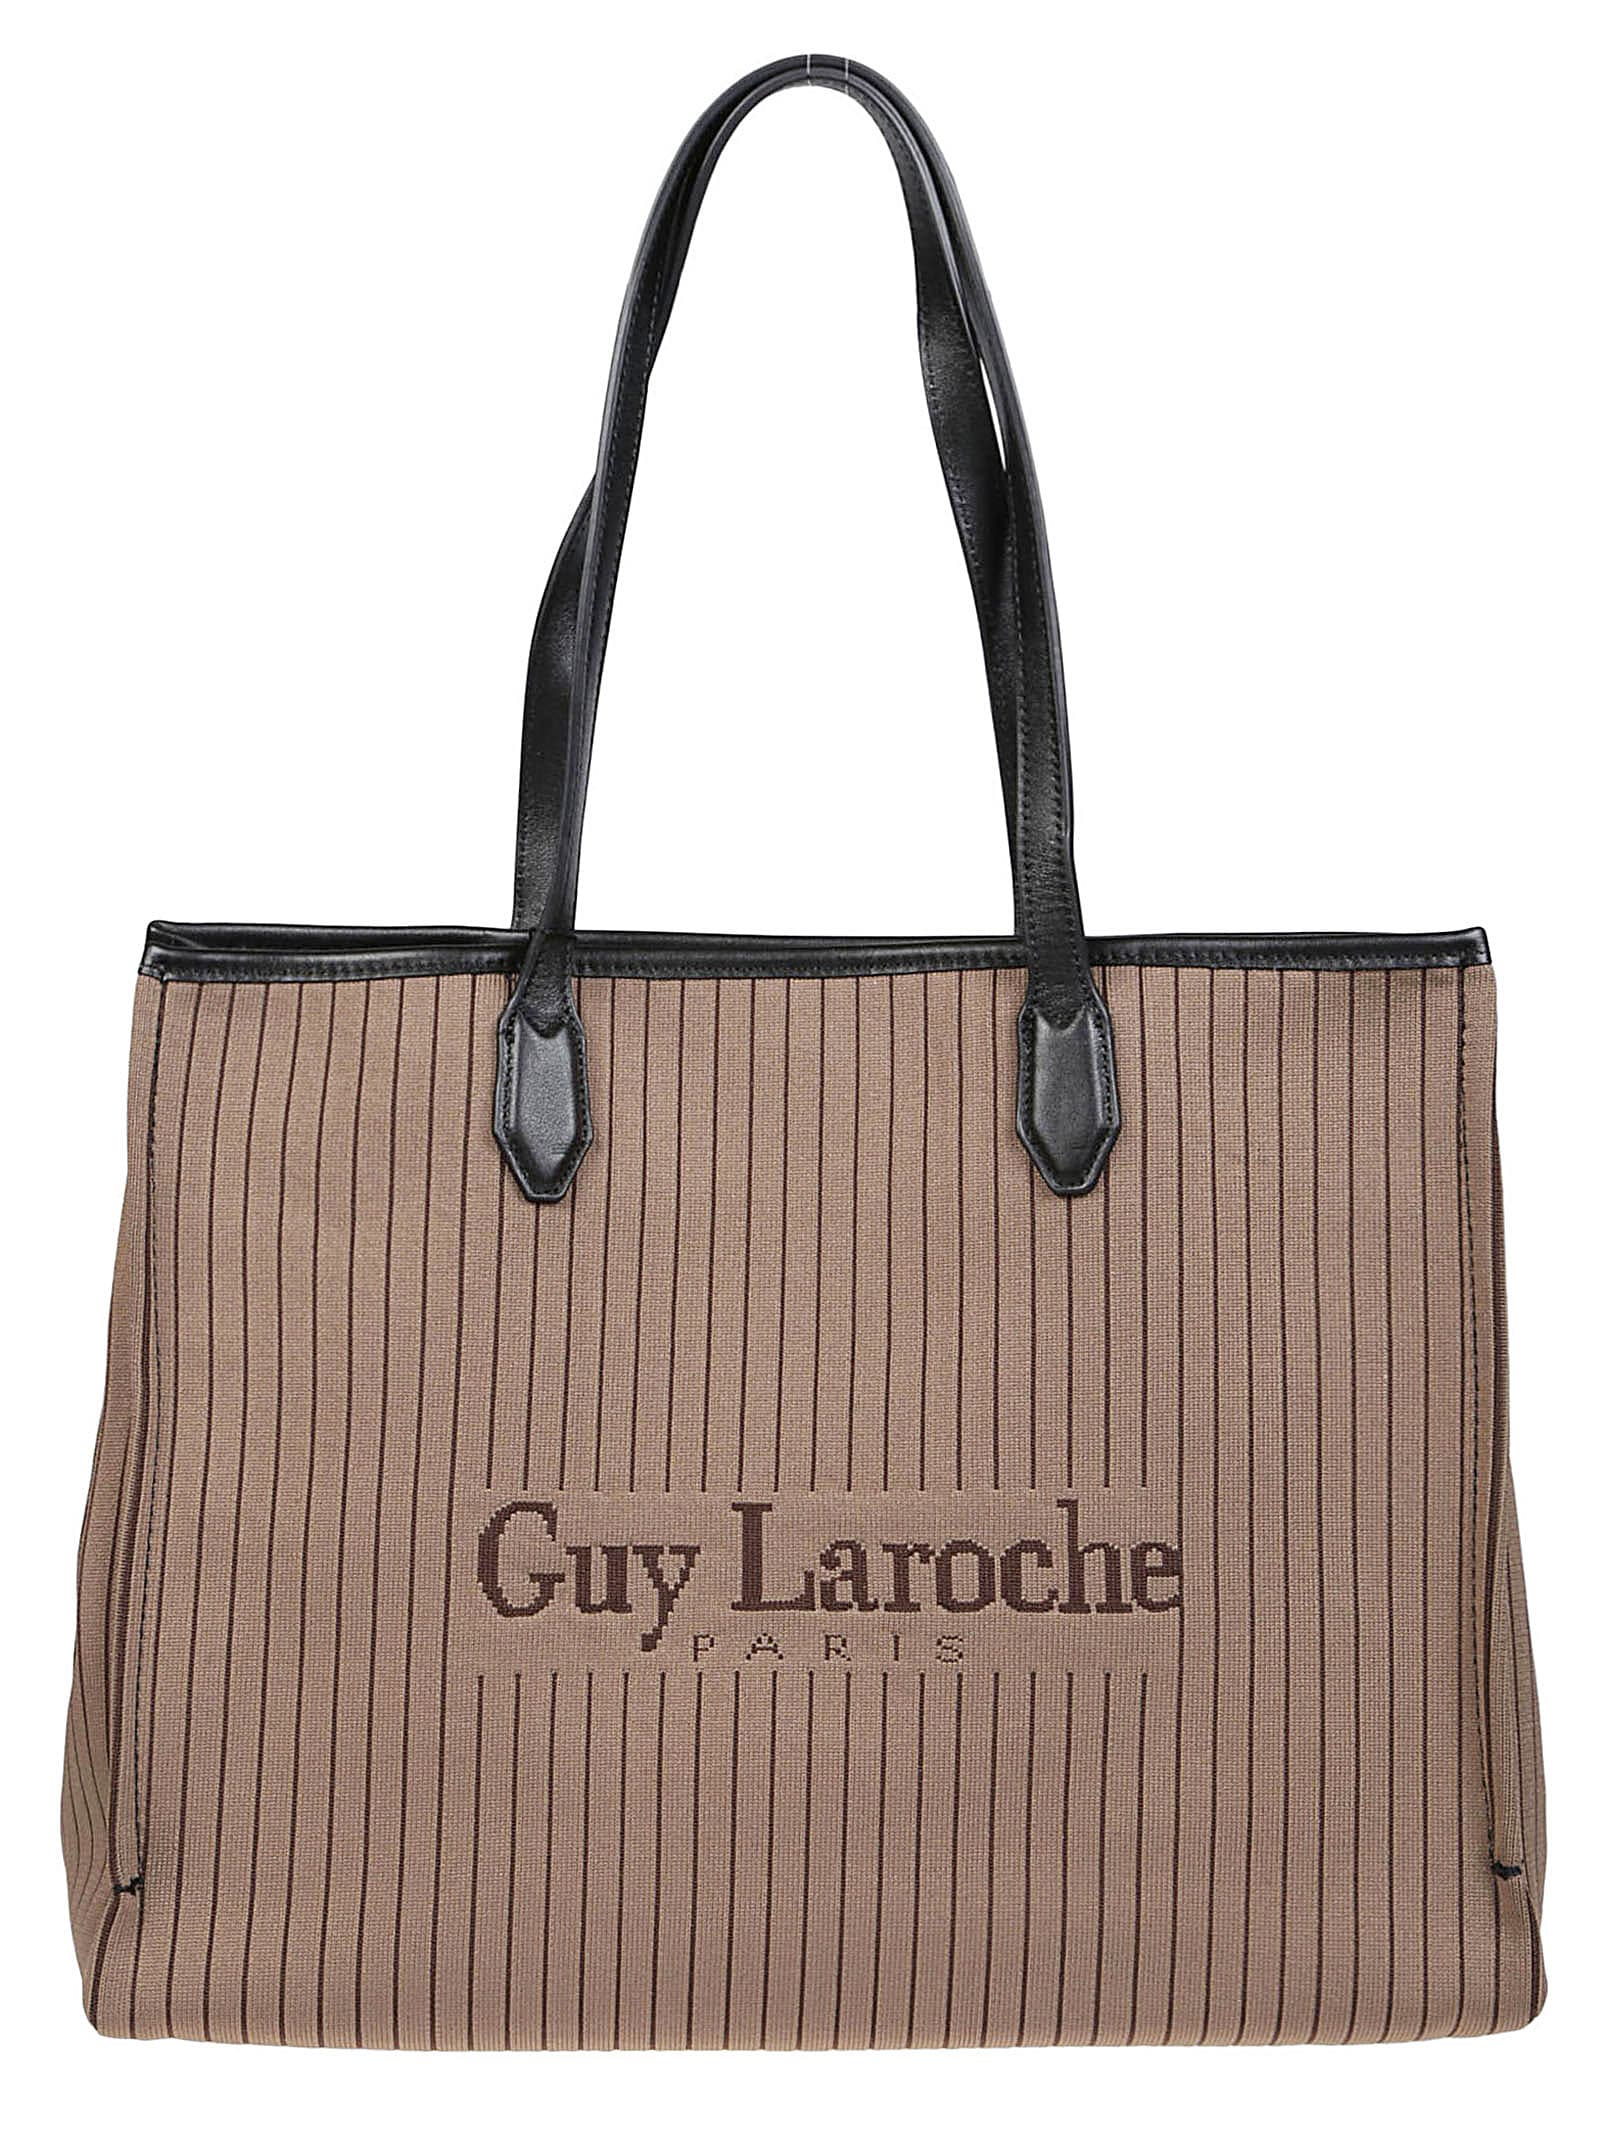 Guy Laroche Small Tote Bag in Black